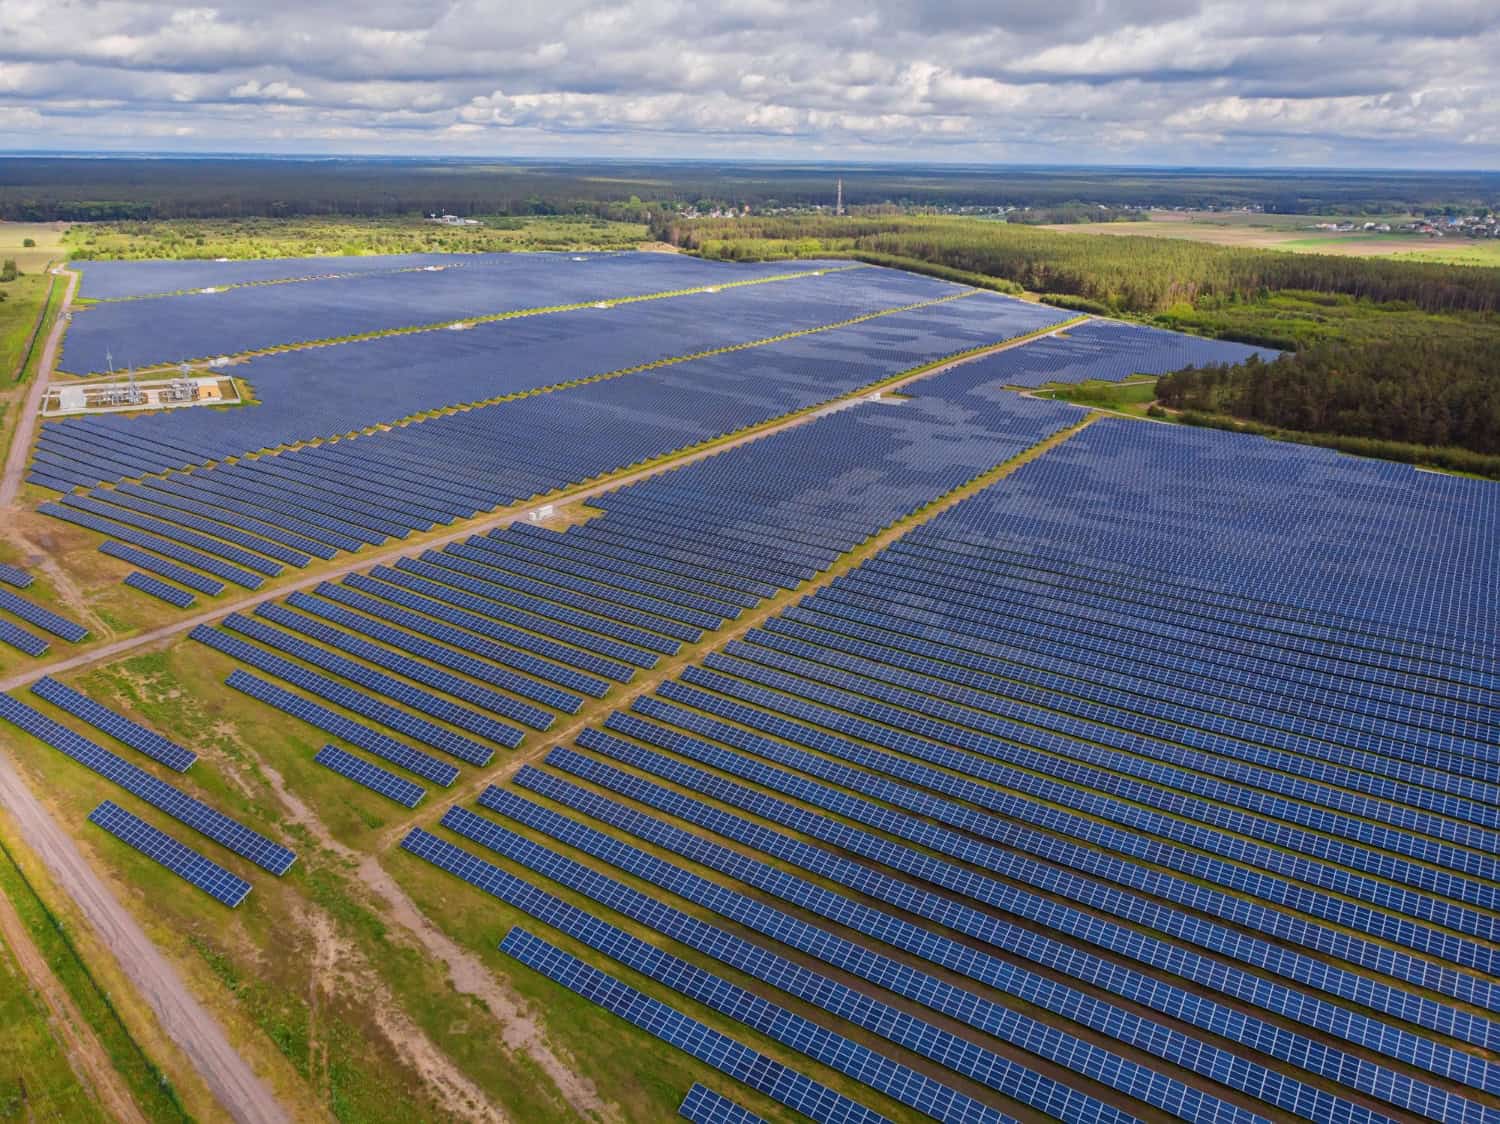 Zdjęcie pokazuje elektrownie słoneczną, nawiązującą do tytułu artykułu ,,Elektrownie słoneczne w Polsce".